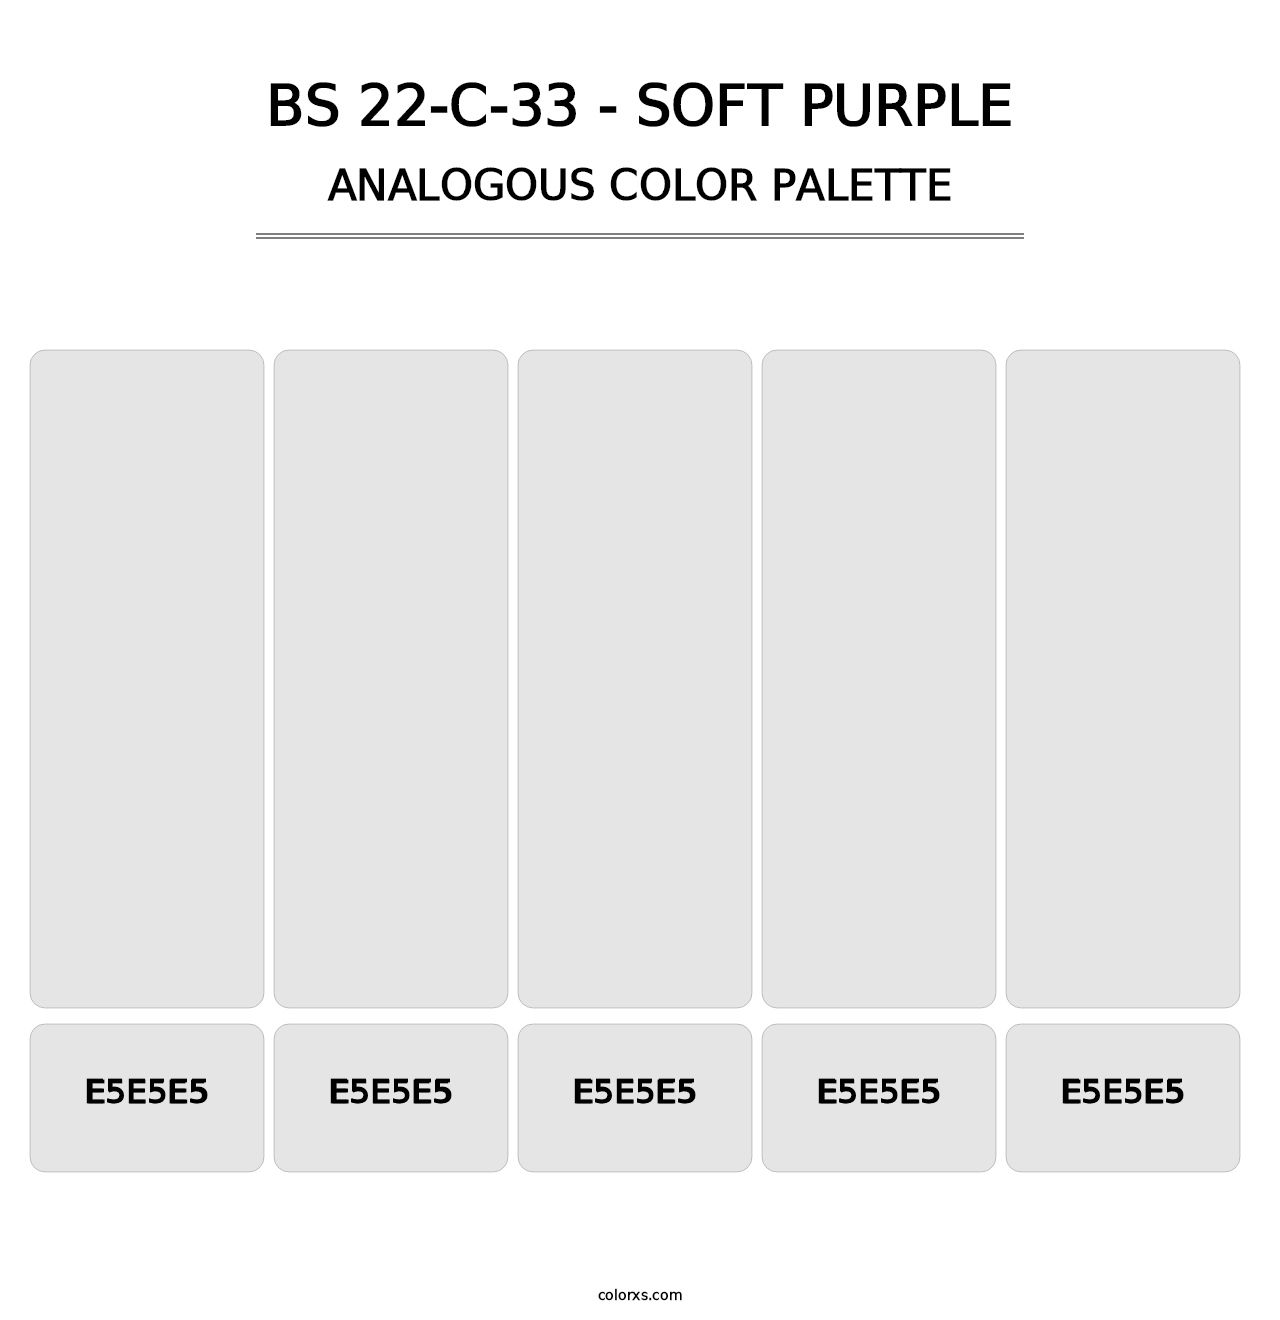 BS 22-C-33 - Soft Purple - Analogous Color Palette